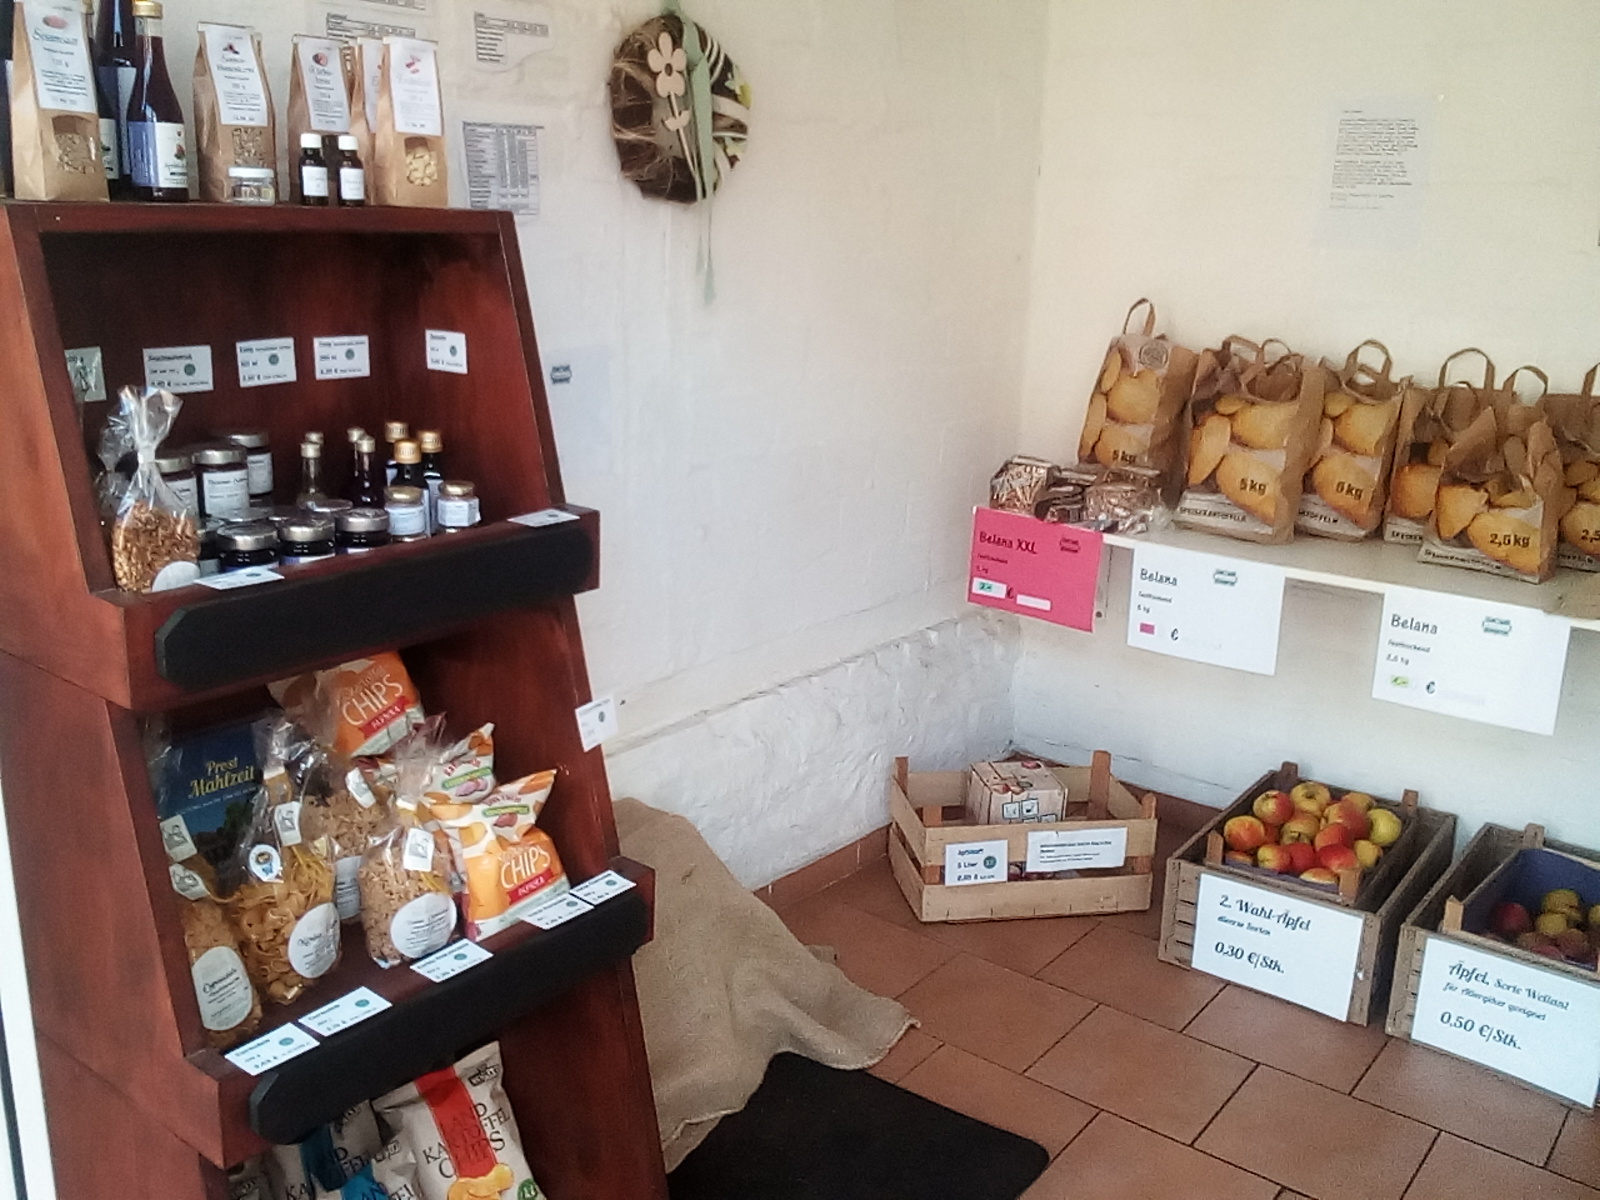 SB-Hofladen mit Kartoffeln, Äpfeln, Chips, Nudeln, Saft, Aroniaprodukten, Brötchen zum Aufbacken und Brot